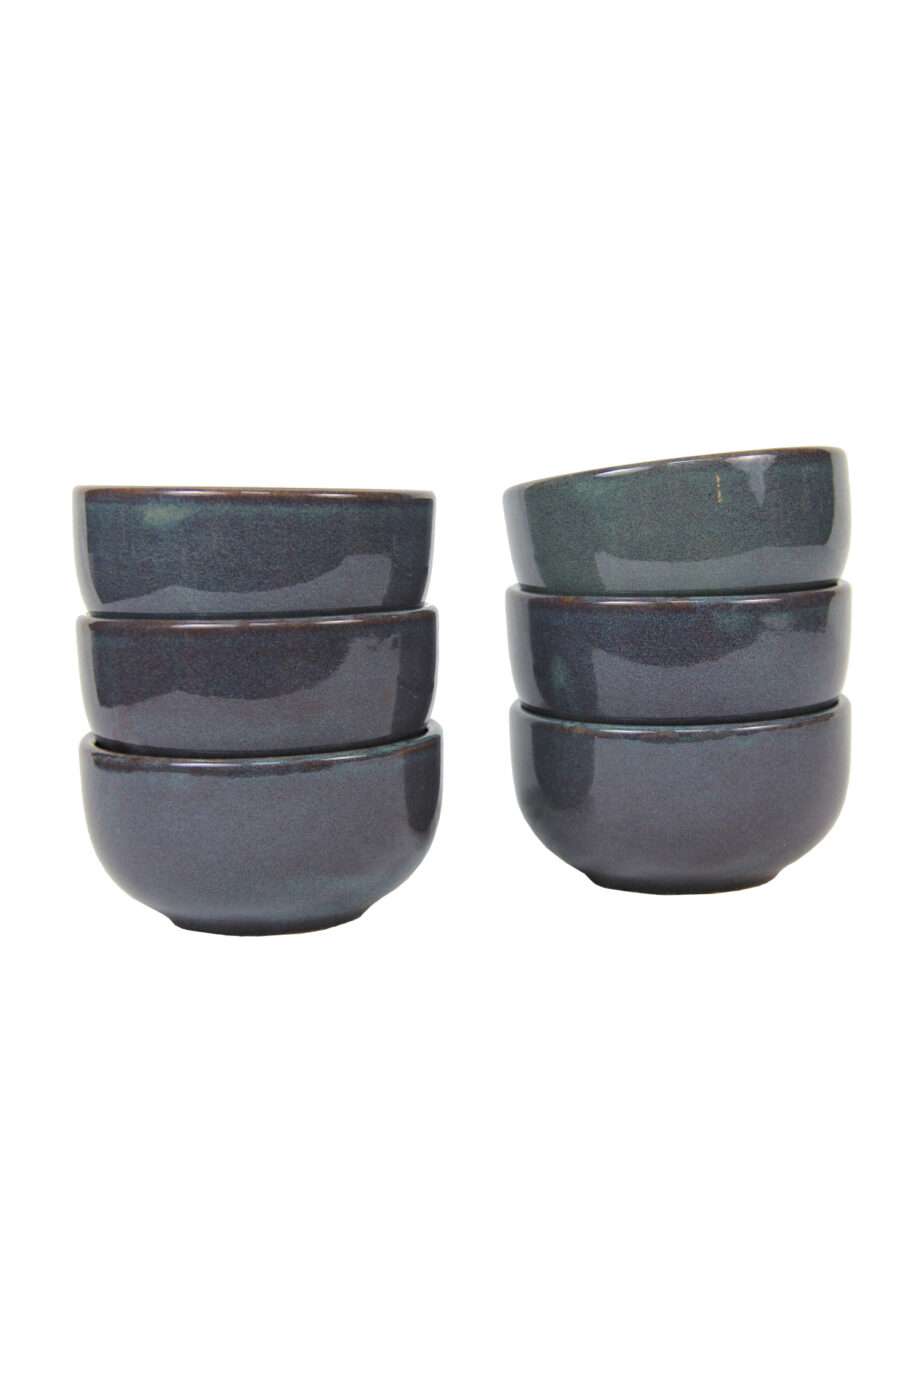 bowl celadon glaze ceramic medium